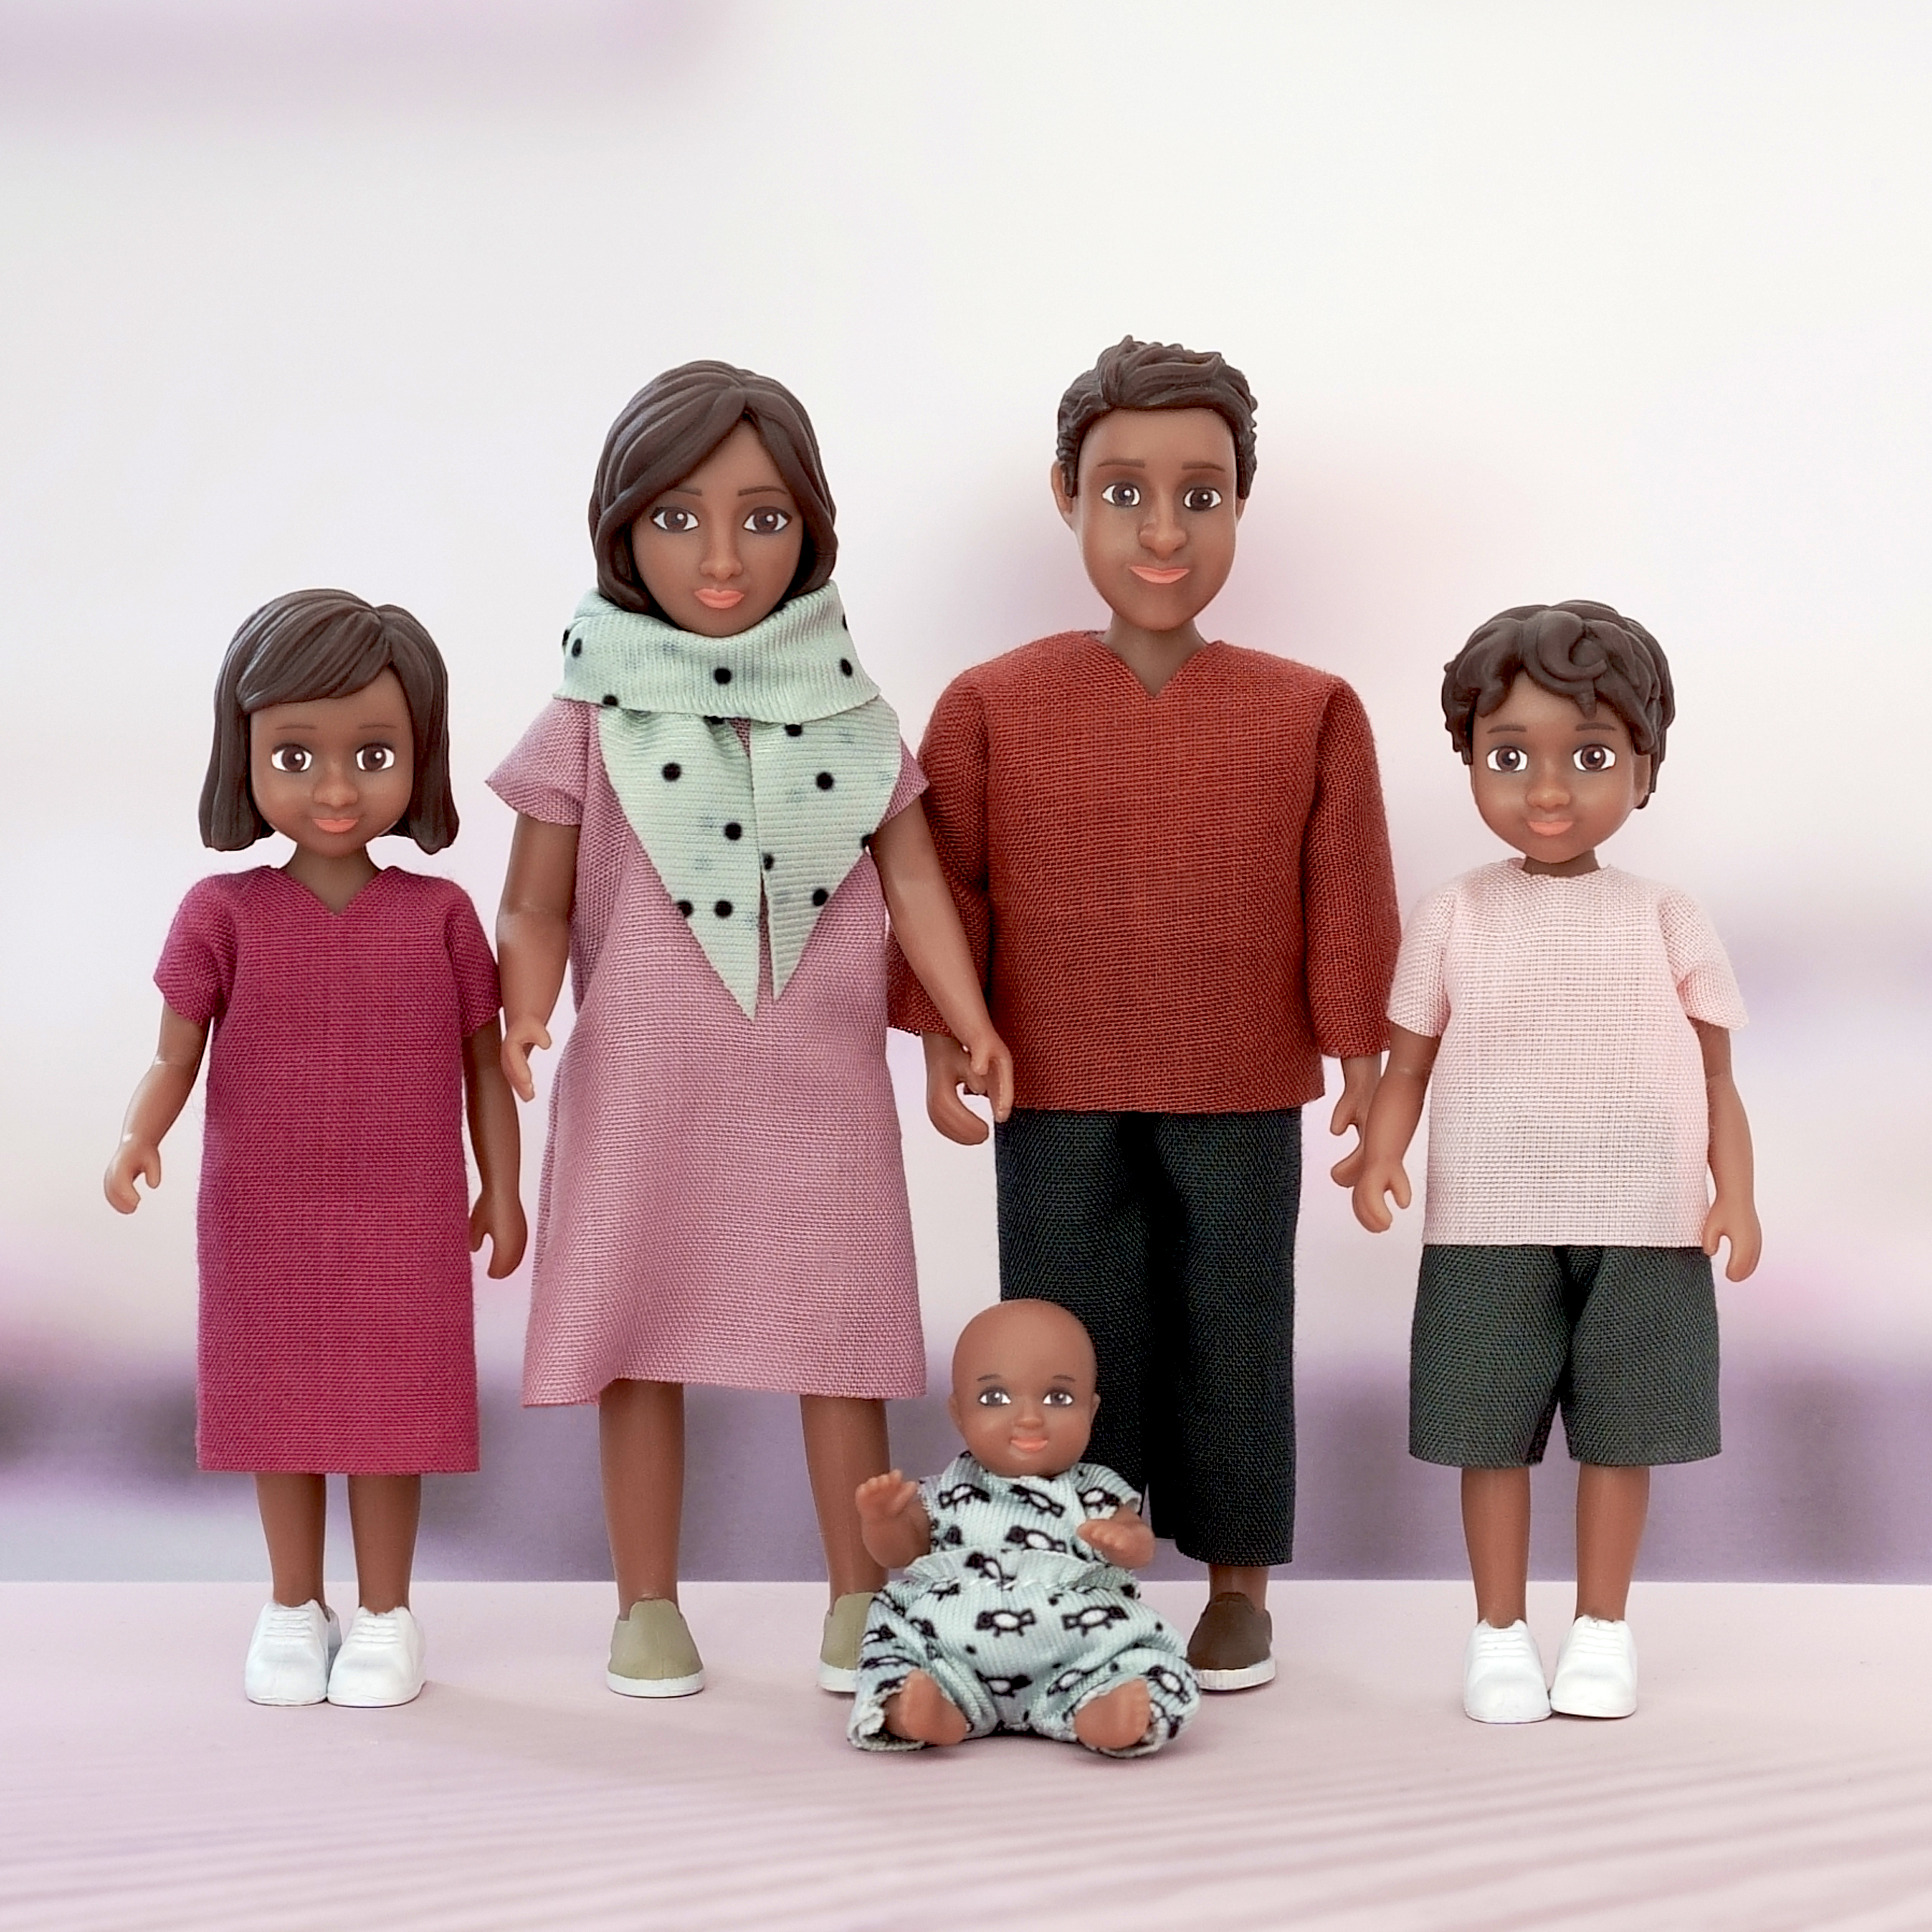 Dark-skinned dolls lundby	doll house dolls set nikki